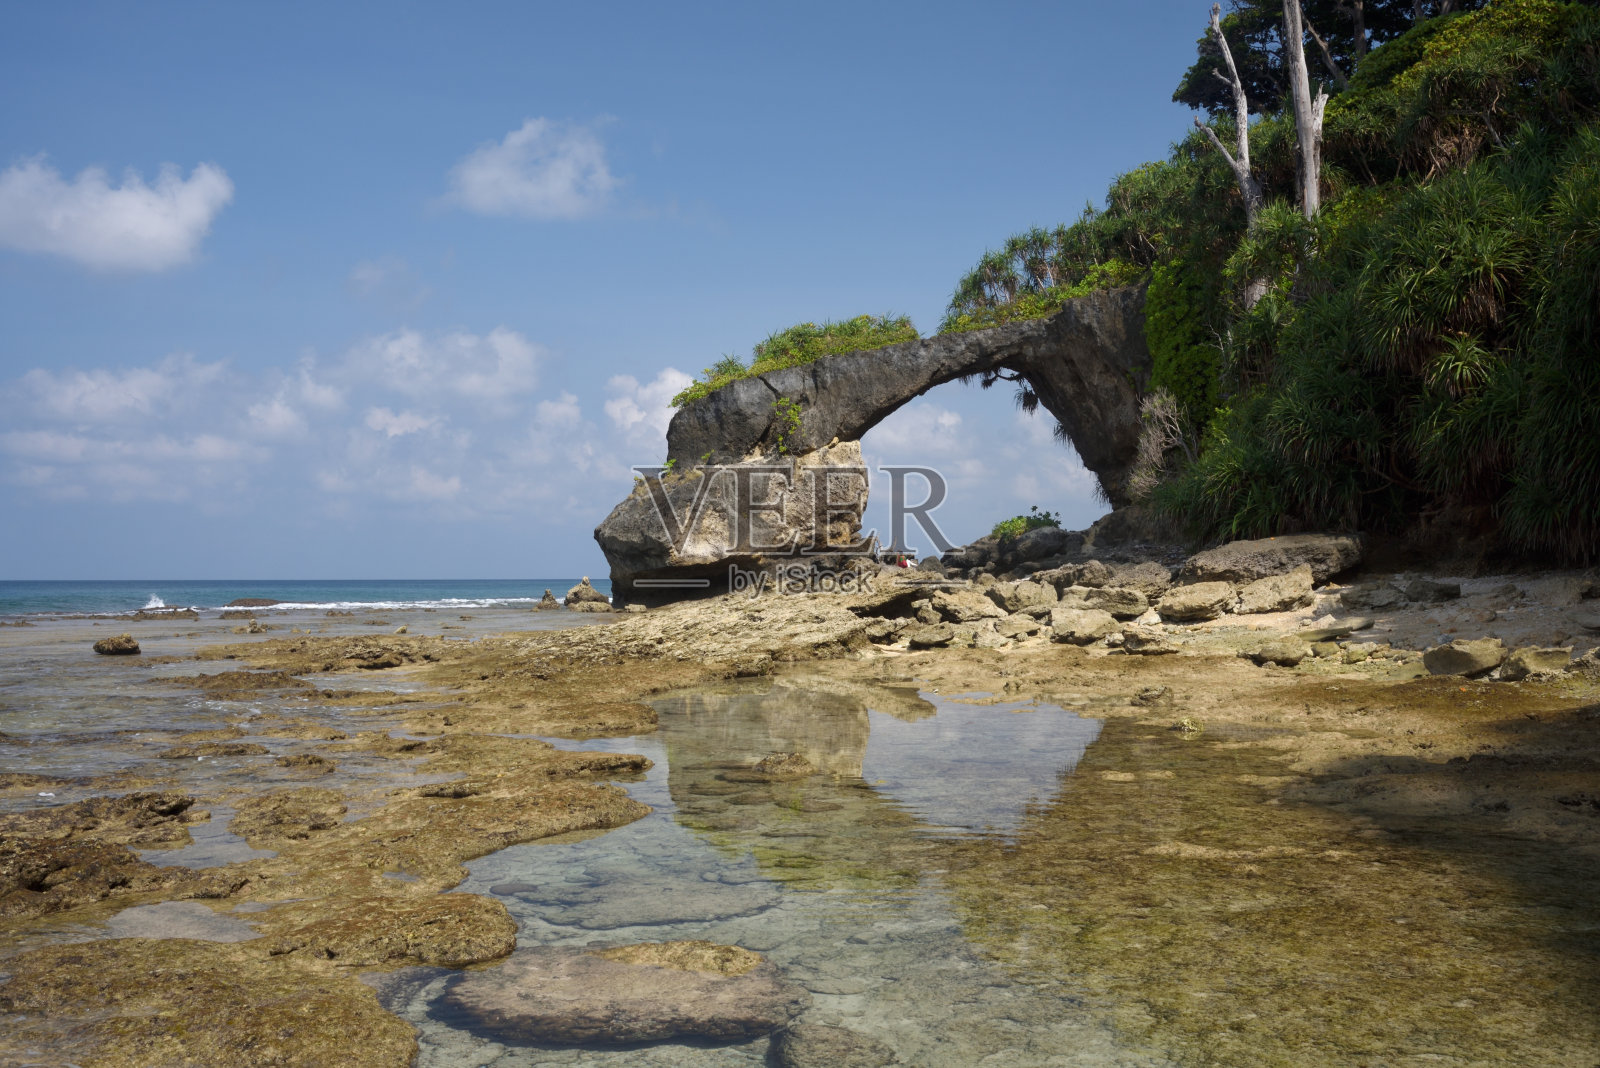 退潮时尼尔岛的天然珊瑚桥照片摄影图片